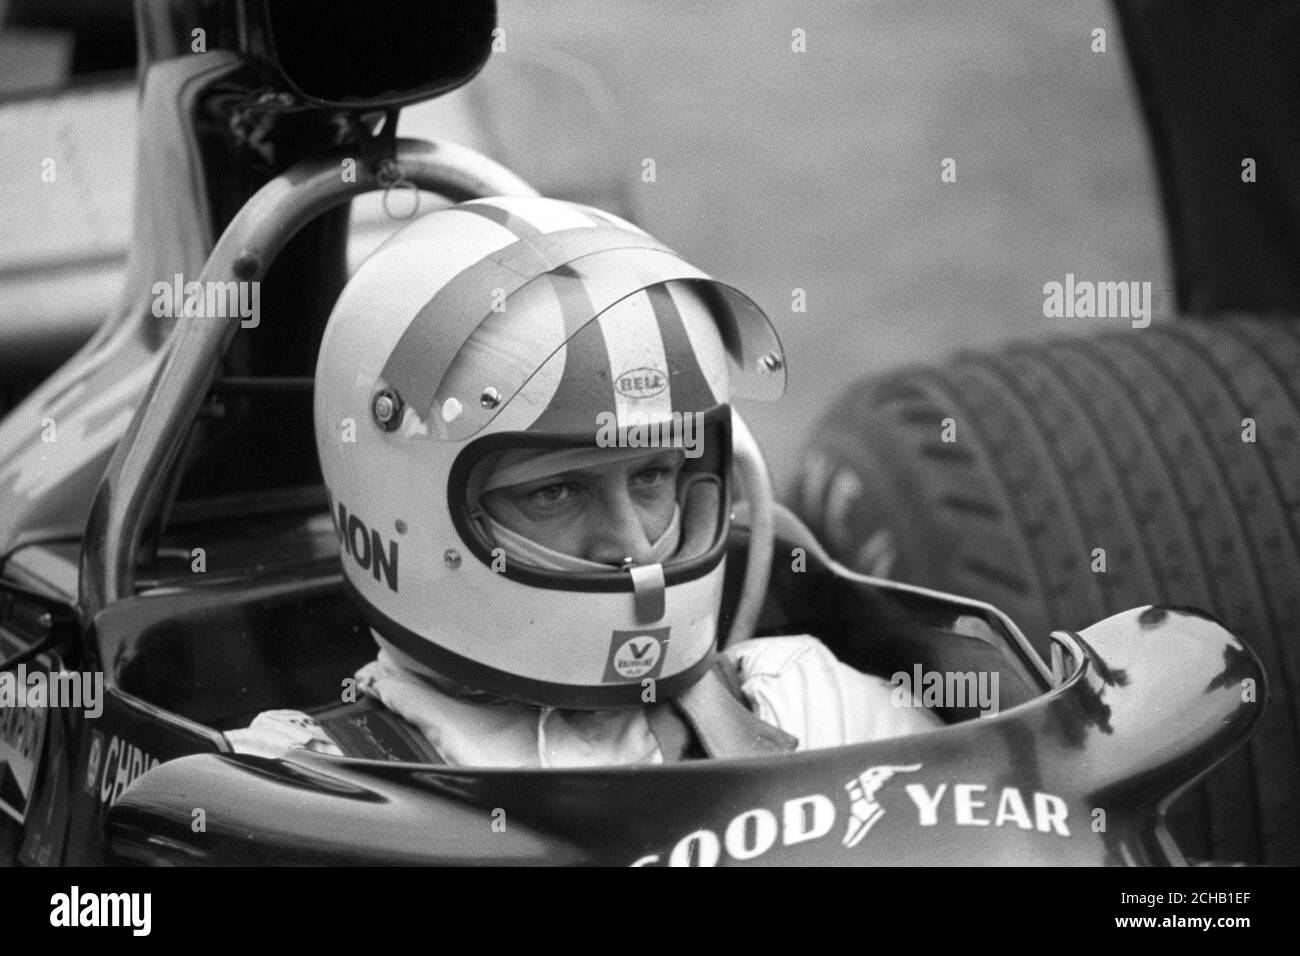 Am Steuer seines Ensign N174 sitzt der neuseeländische Motorsportfahrer Chris Amon. Stockfoto